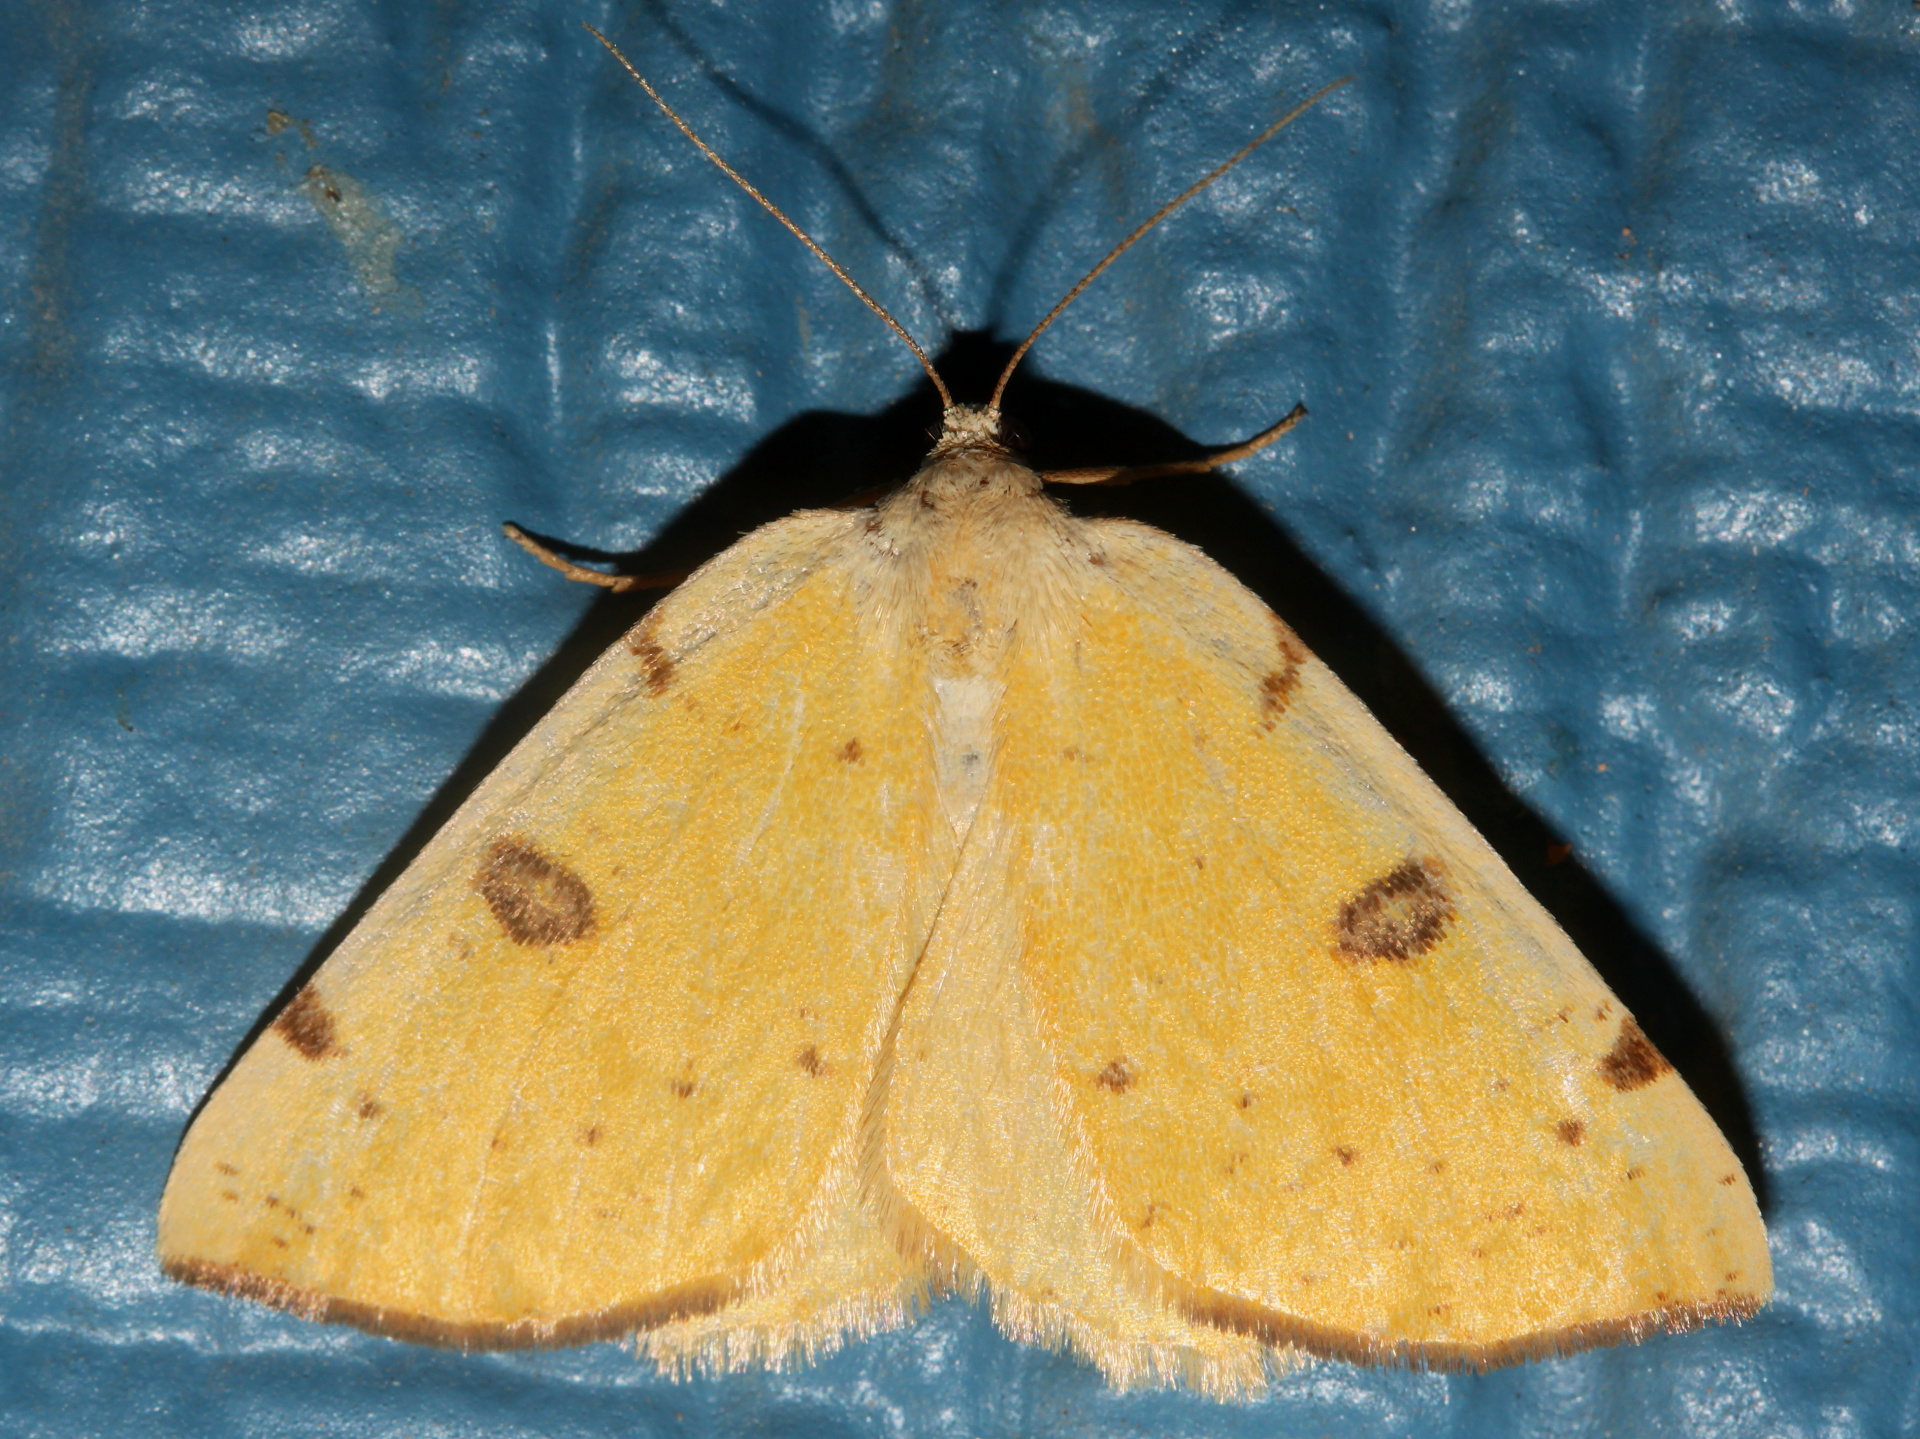 Hesperumia sulphuraria (Podróże » USA: Drogi nie obrane » Zwierzęta » Owady » Motyle i ćmy » Geometridae)